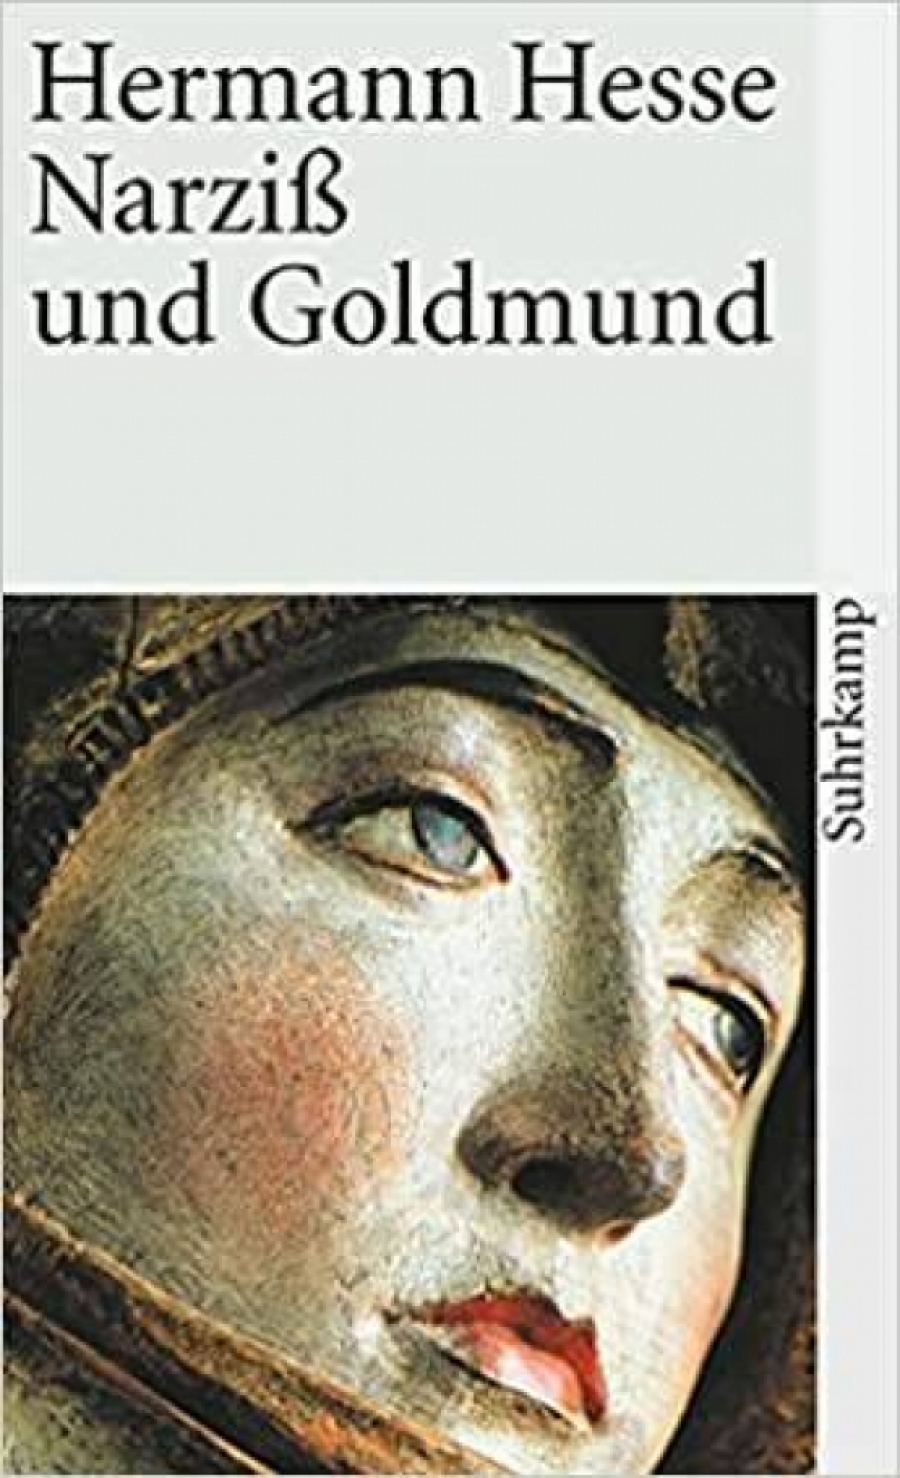 Hesse, Hermann Narziss und Goldmund 